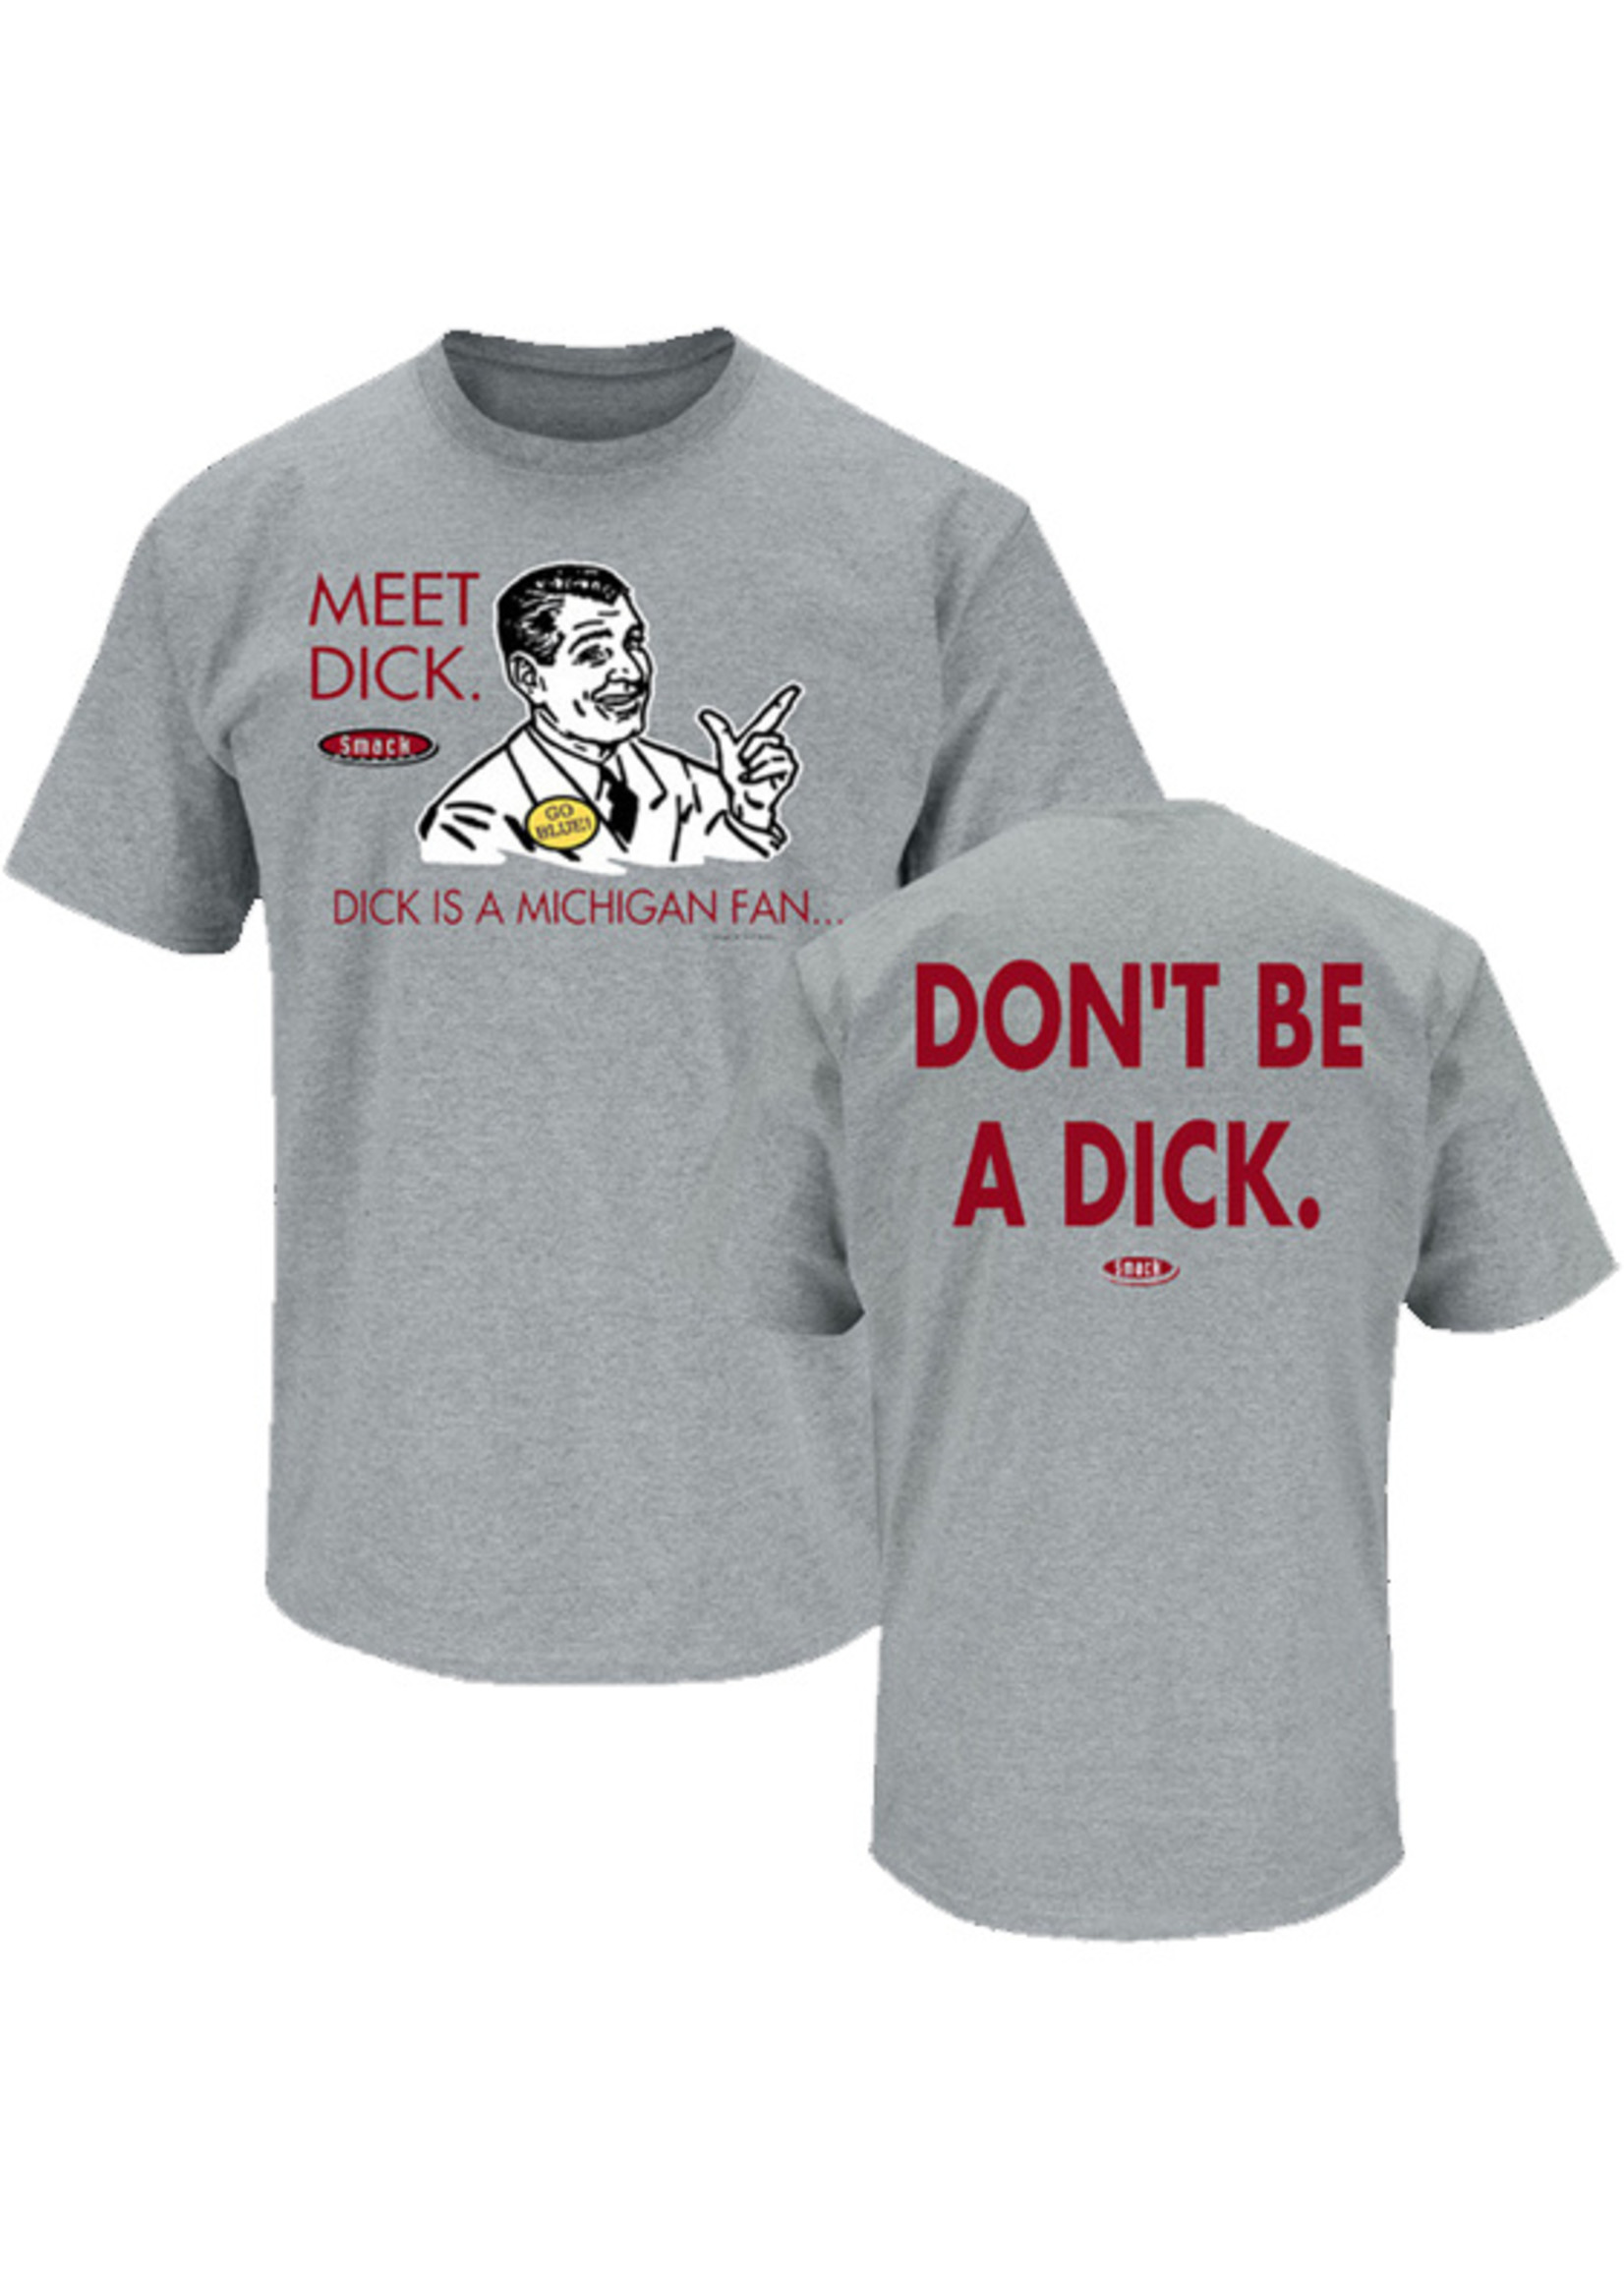 Ohio State Buckeyes "Meet Dick" Shirt